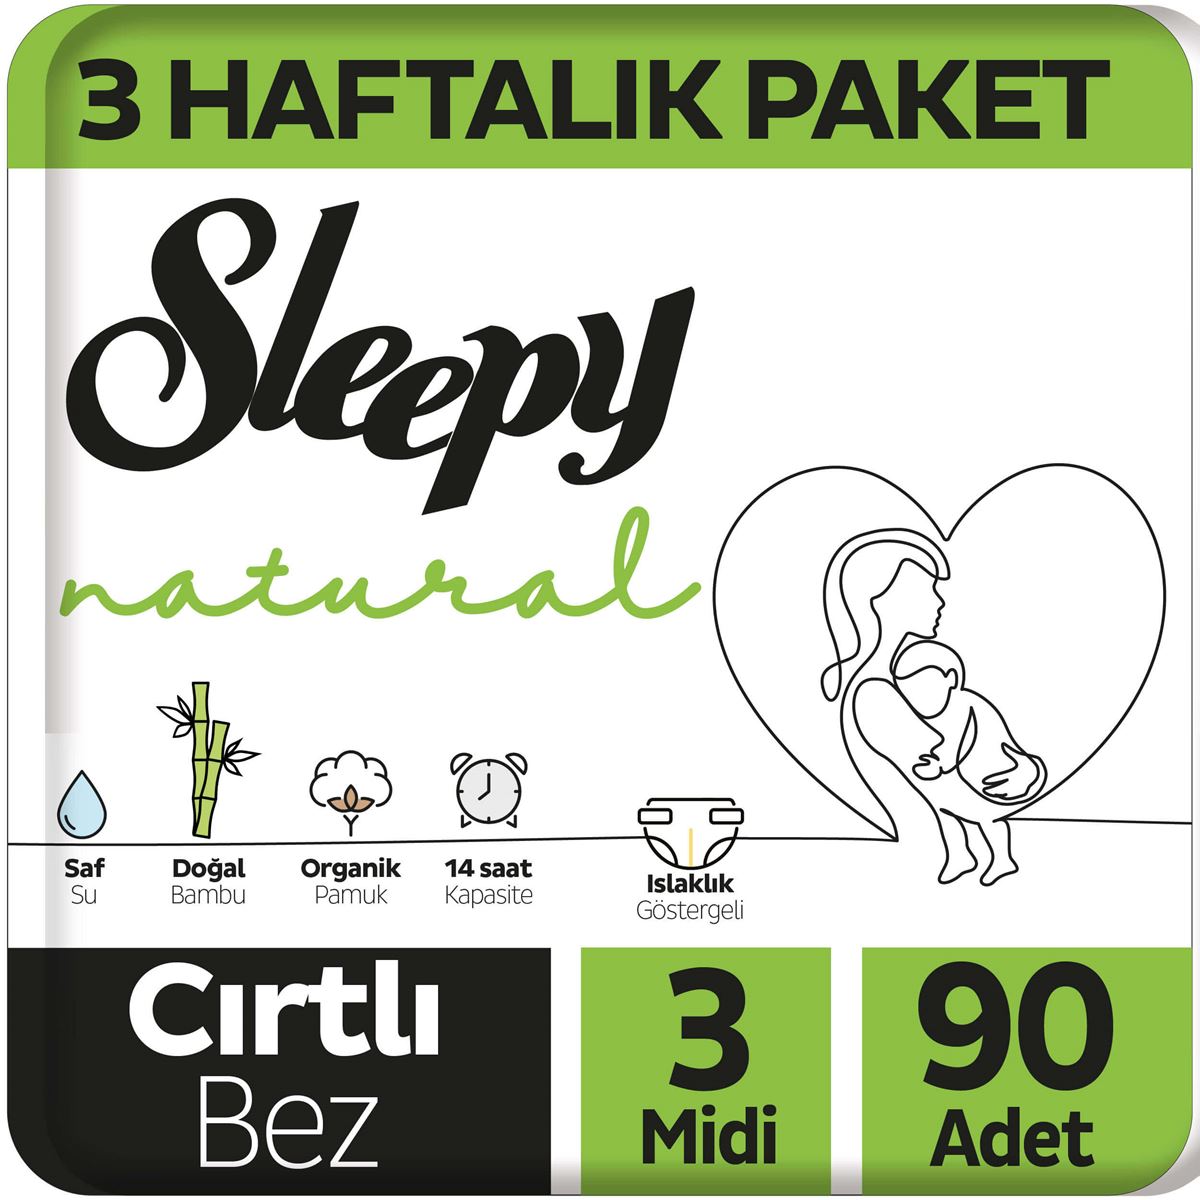 Sleepy Natural 3 Haftalık Paket Bebek Bezi 3 Numara Midi 90 Adet